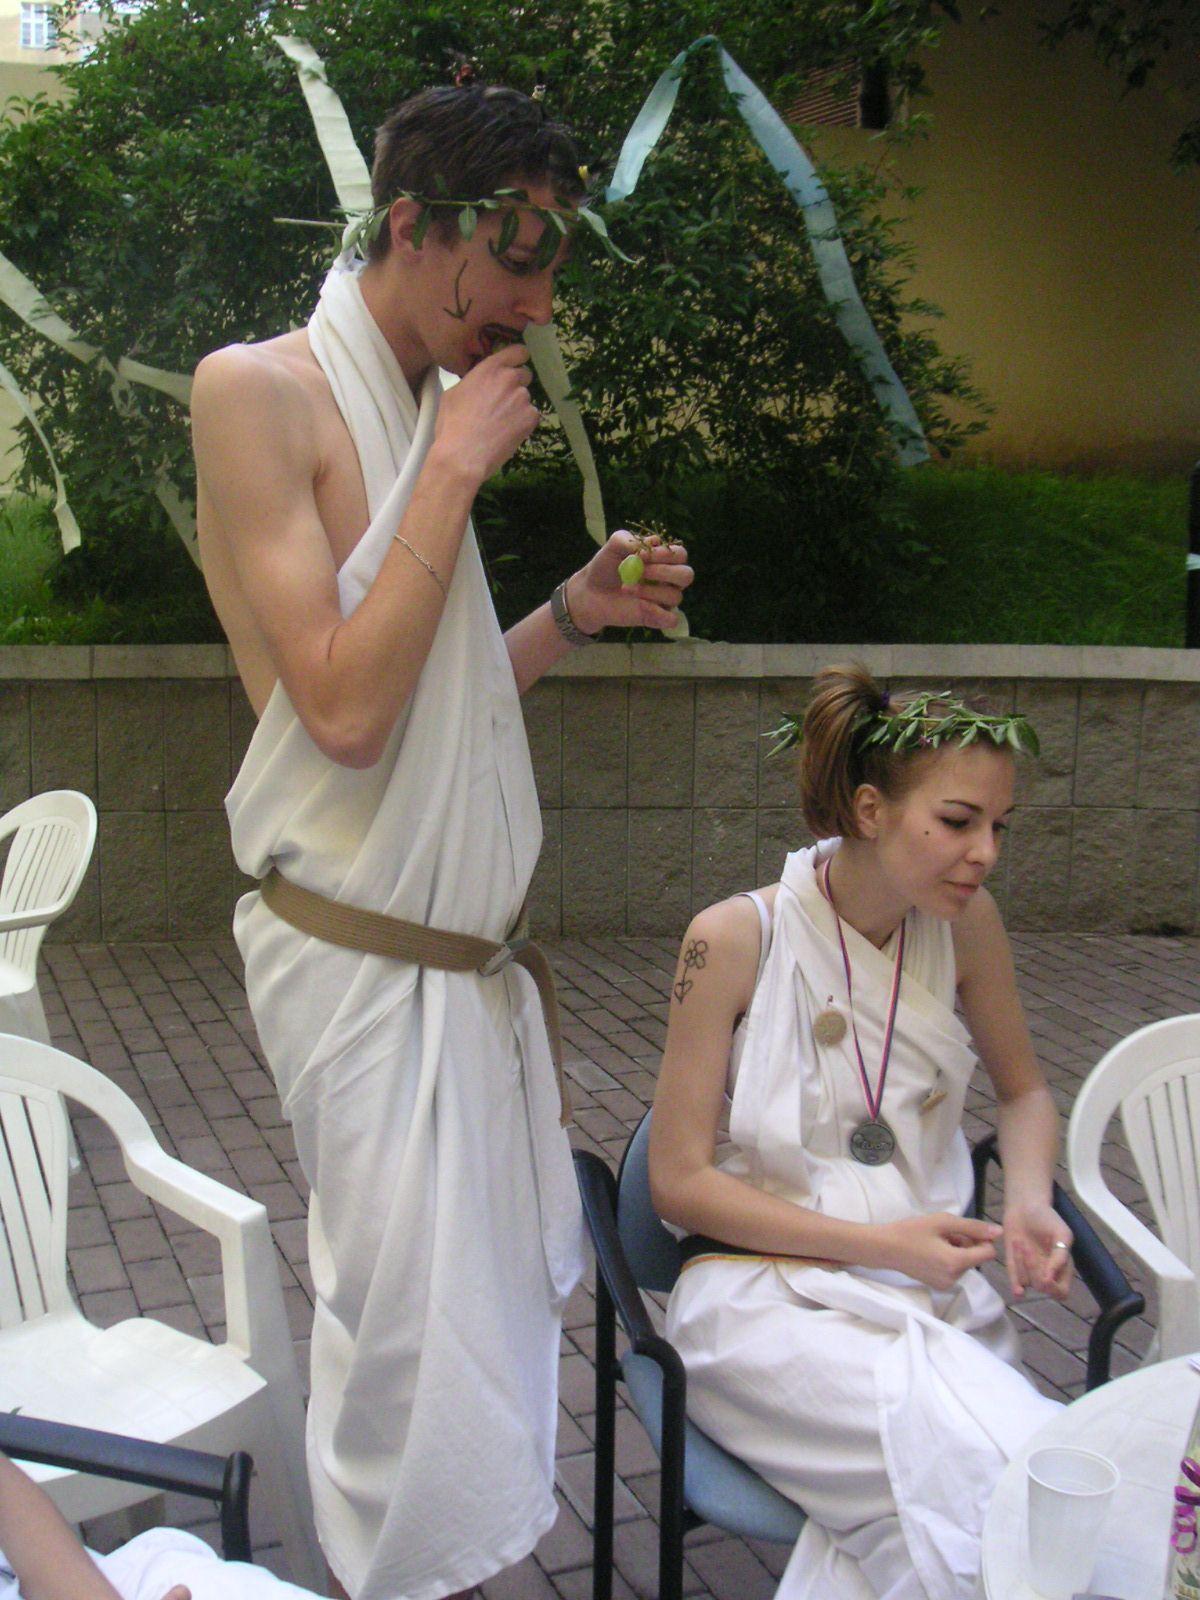 Antik párty 2004
Tomáš a Katarinka, kterak nektarem a ambrózií sebe nacpávají.